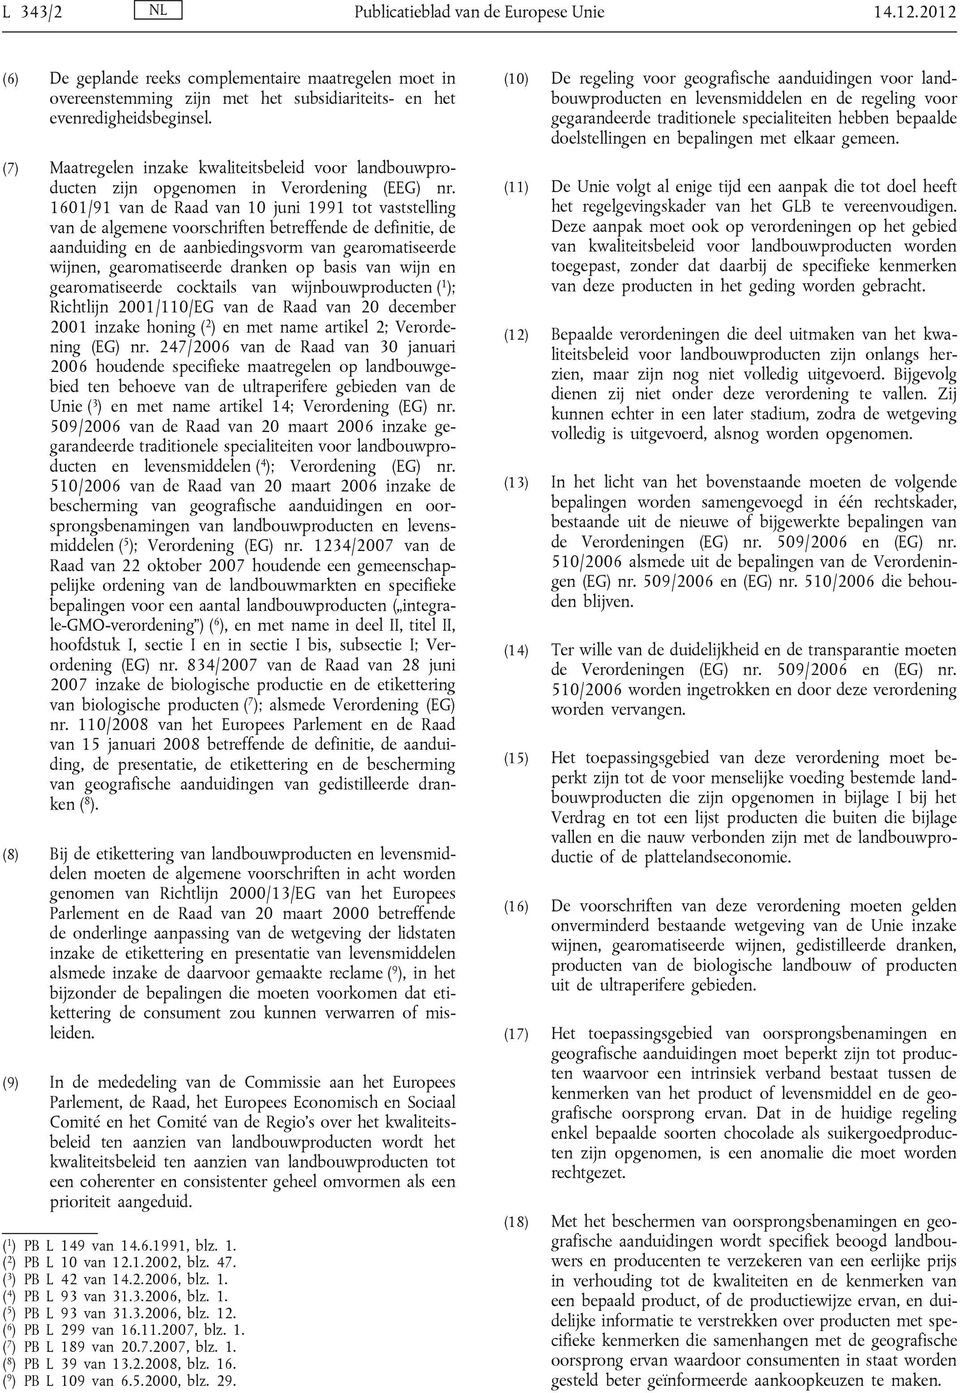 1601/91 van de Raad van 10 juni 1991 tot vaststelling van de algemene voorschriften betreffende de definitie, de aanduiding en de aanbiedingsvorm van gearomatiseerde wijnen, gearomatiseerde dranken